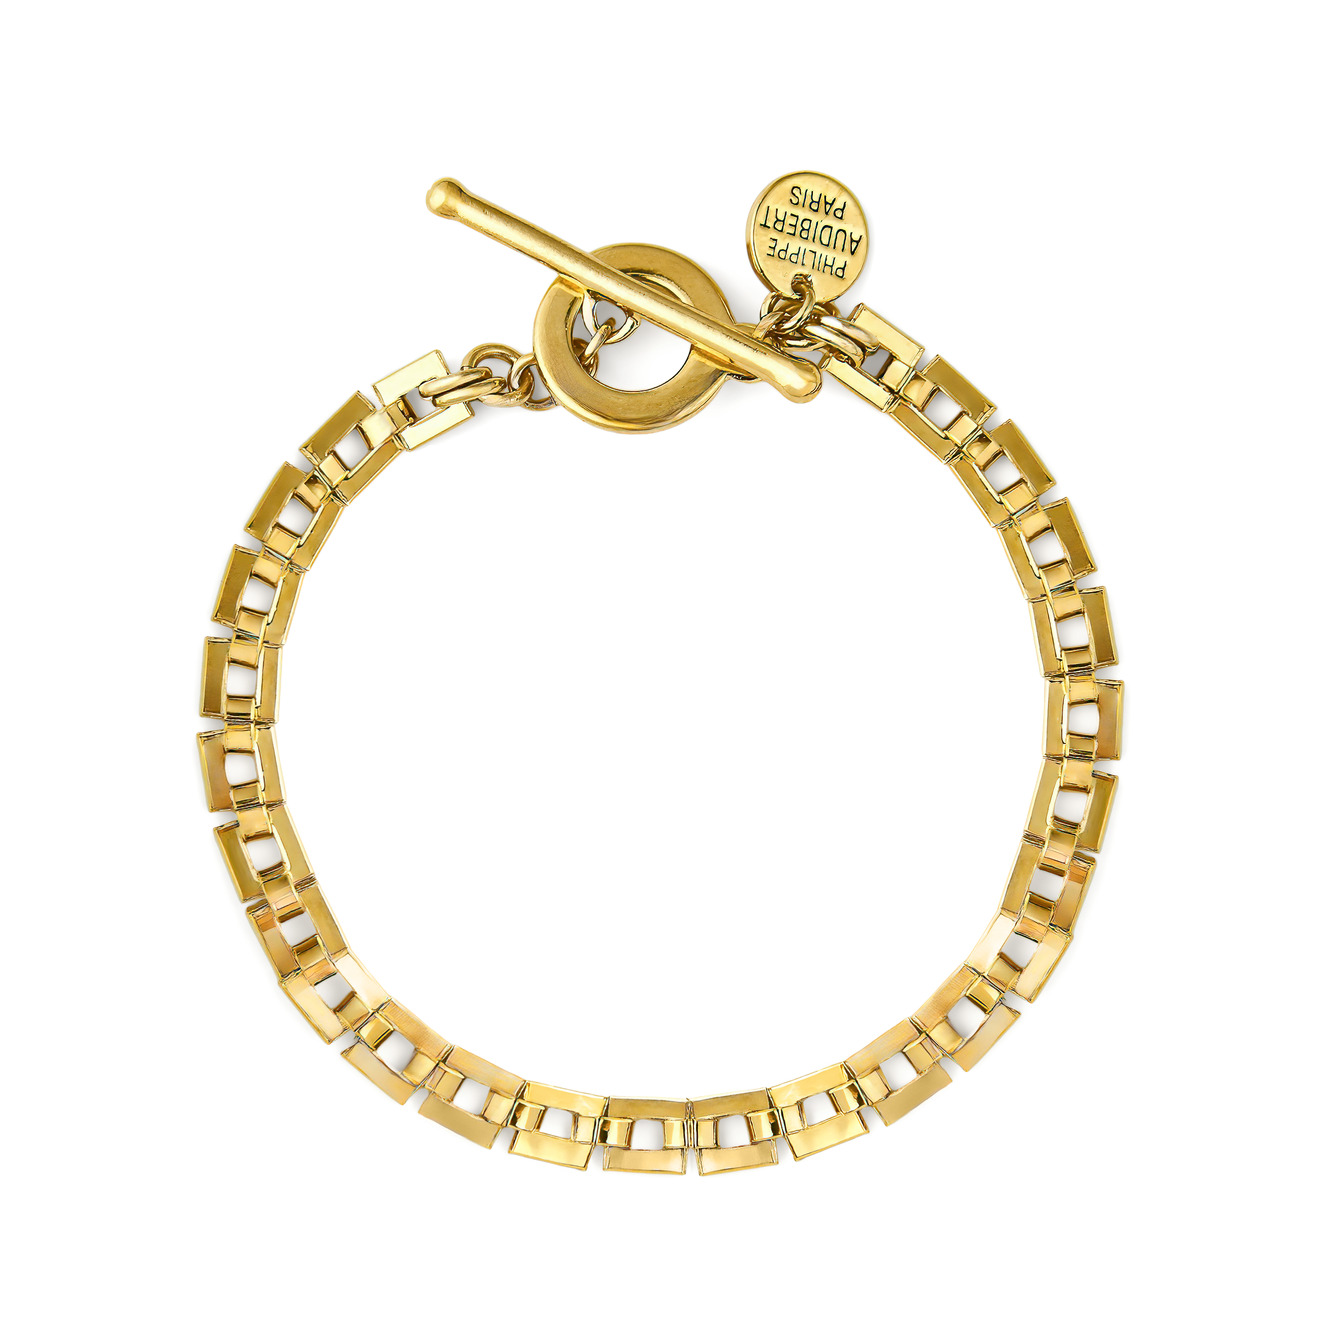 Philippe Audibert Позолоченный браслет-цепь Avner с квадратными звеньями philippe audibert позолоченный браслет kira c сердцем и шариками